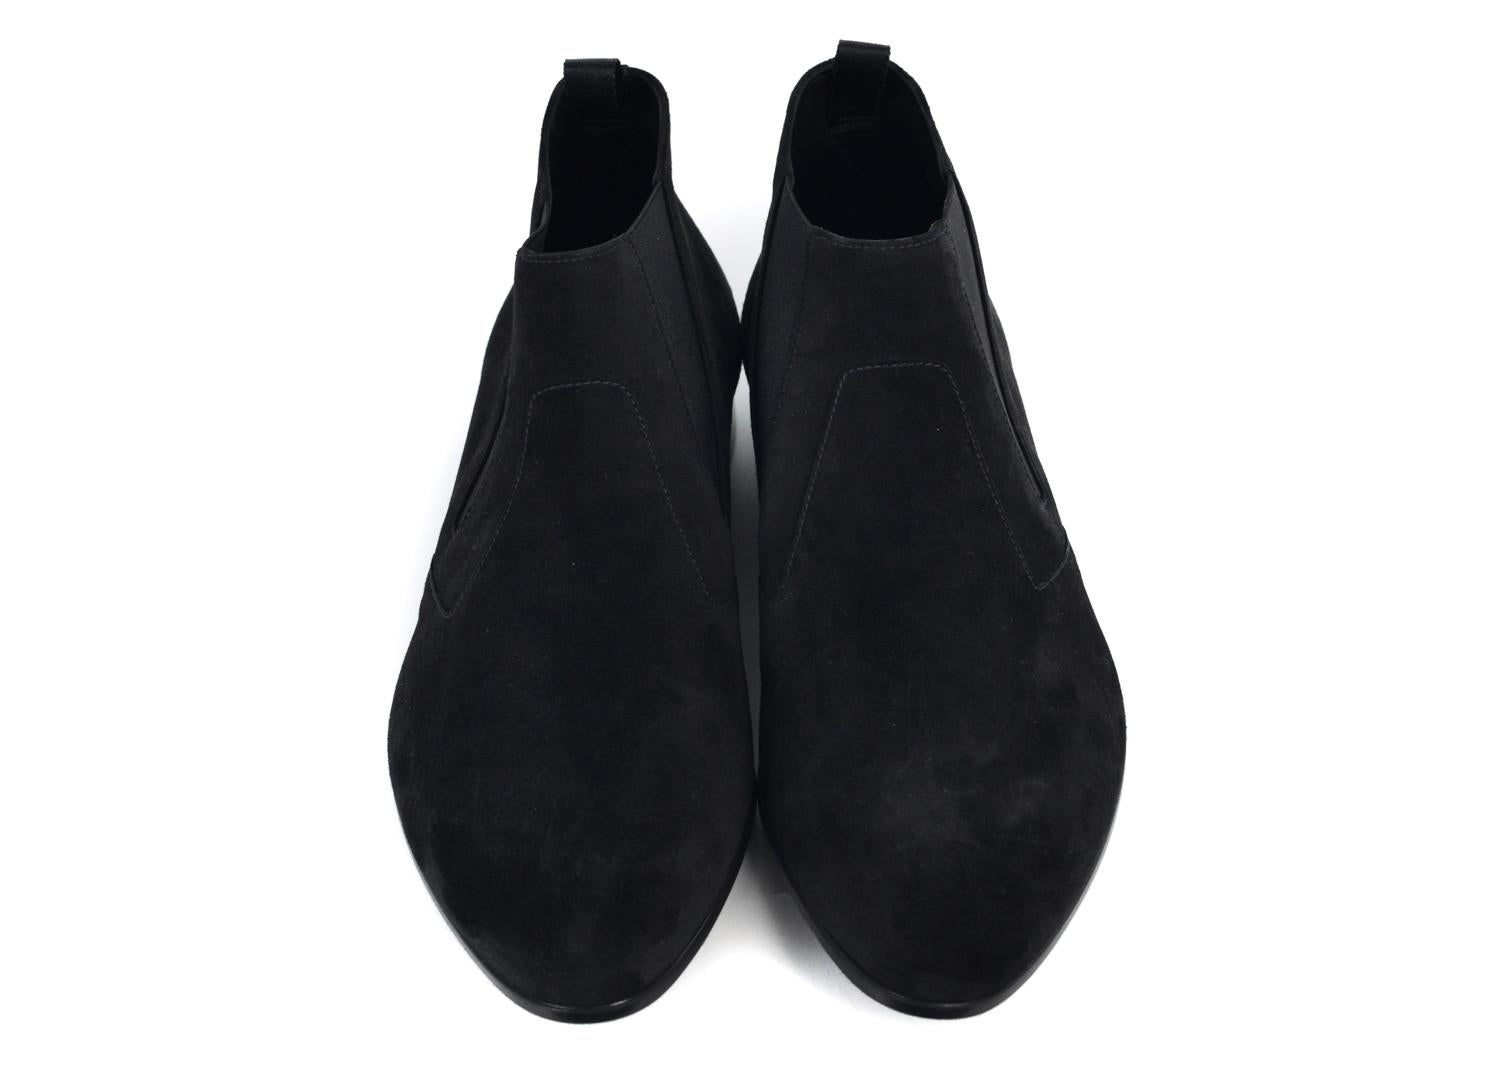 Prada Men's Black Suede Slip On Low Heel Elegance Loafers 1